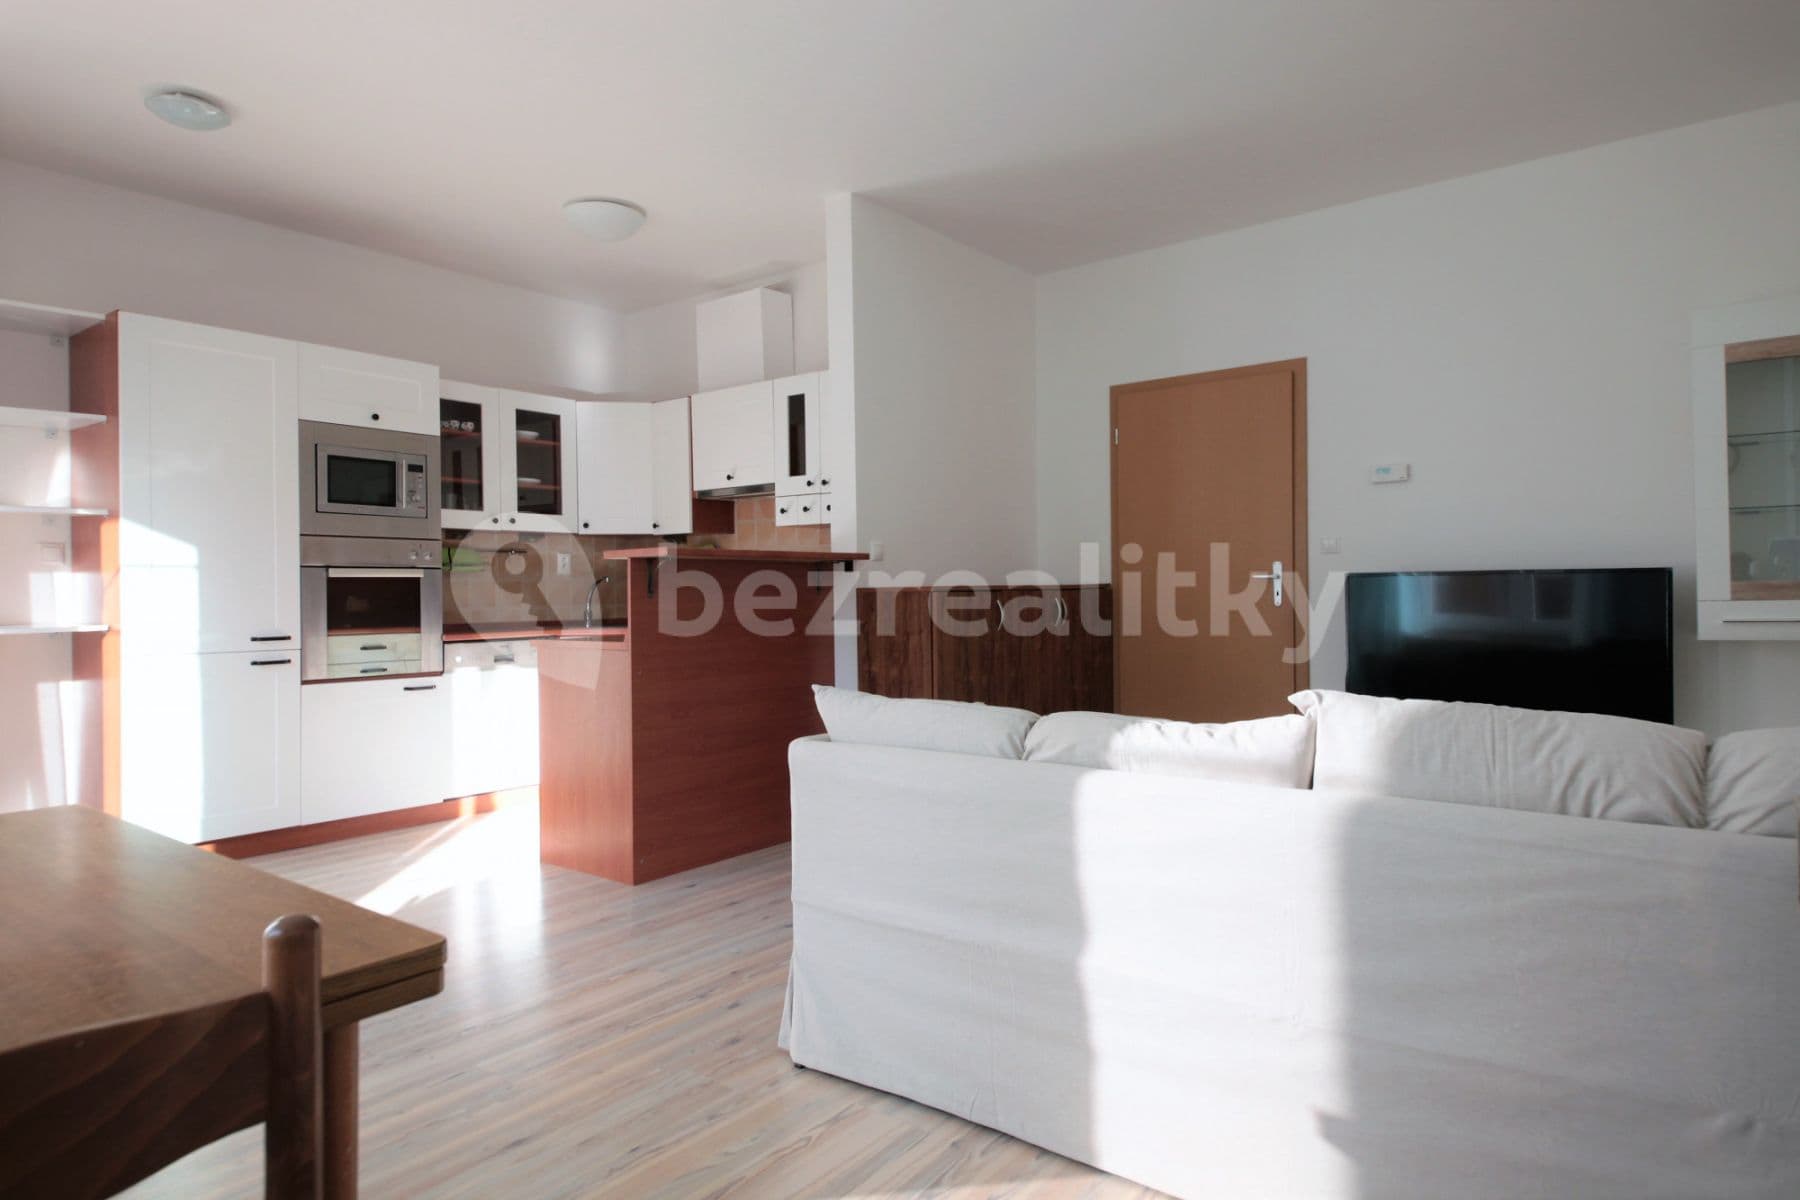 2 bedroom flat to rent, 67 m², V Zahradách, Prague, Prague